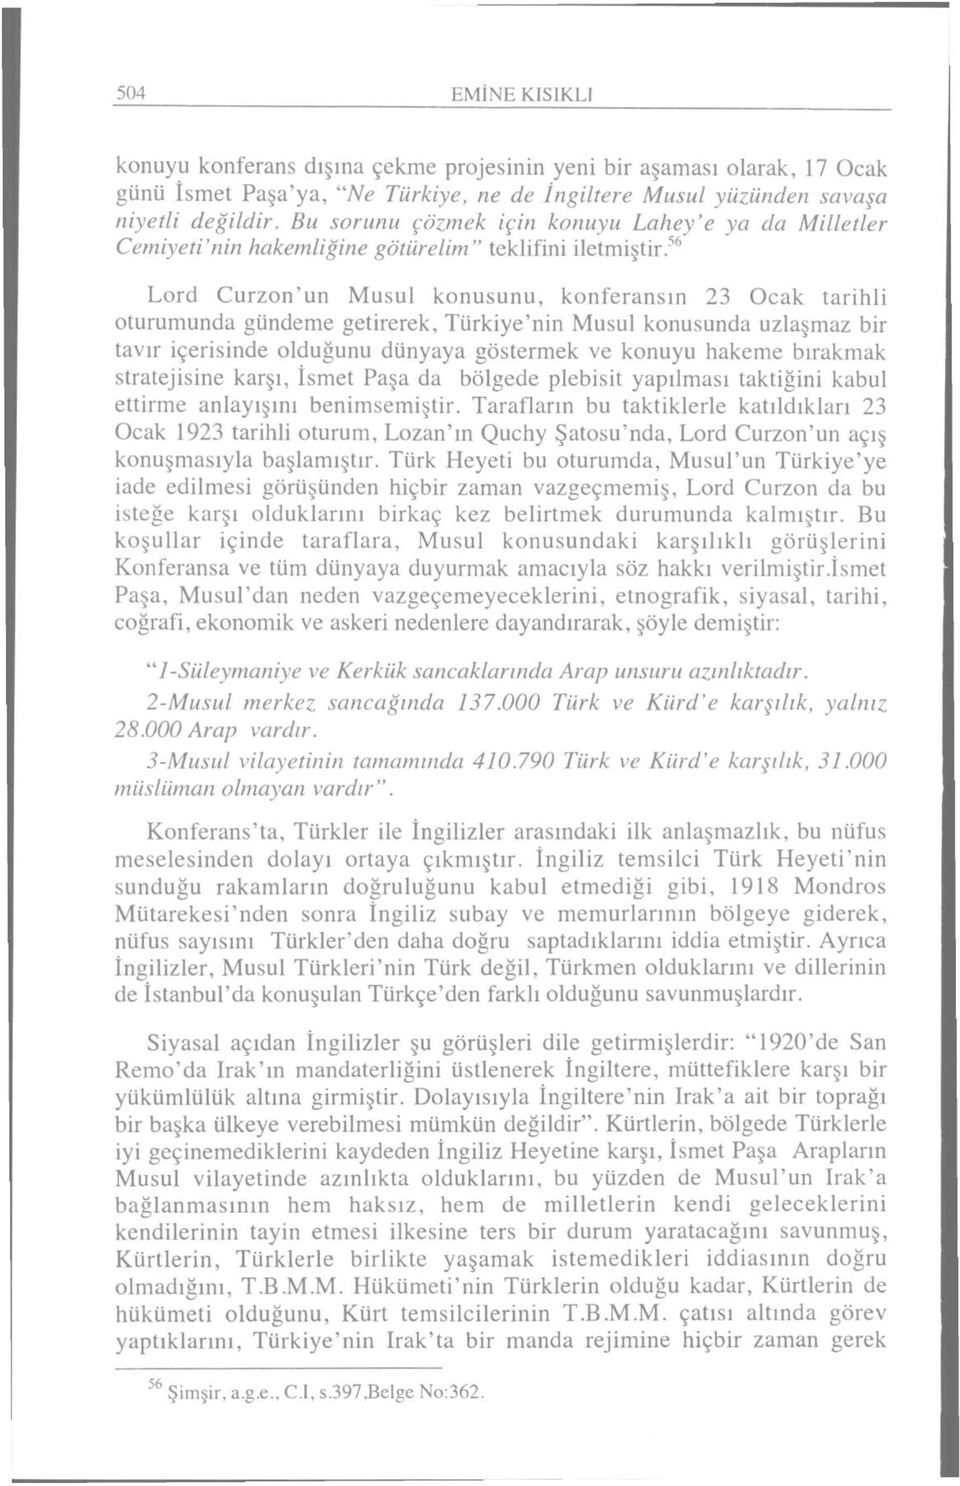 56 Lord Curzon'un Musul konusunu, konferansın 23 Ocak tarihli oturumunda gündeme getirerek, Türkiye'nin Musul konusunda uzlaşmaz bir tavır içerisinde olduğunu dünyaya göstermek ve konuyu hakeme